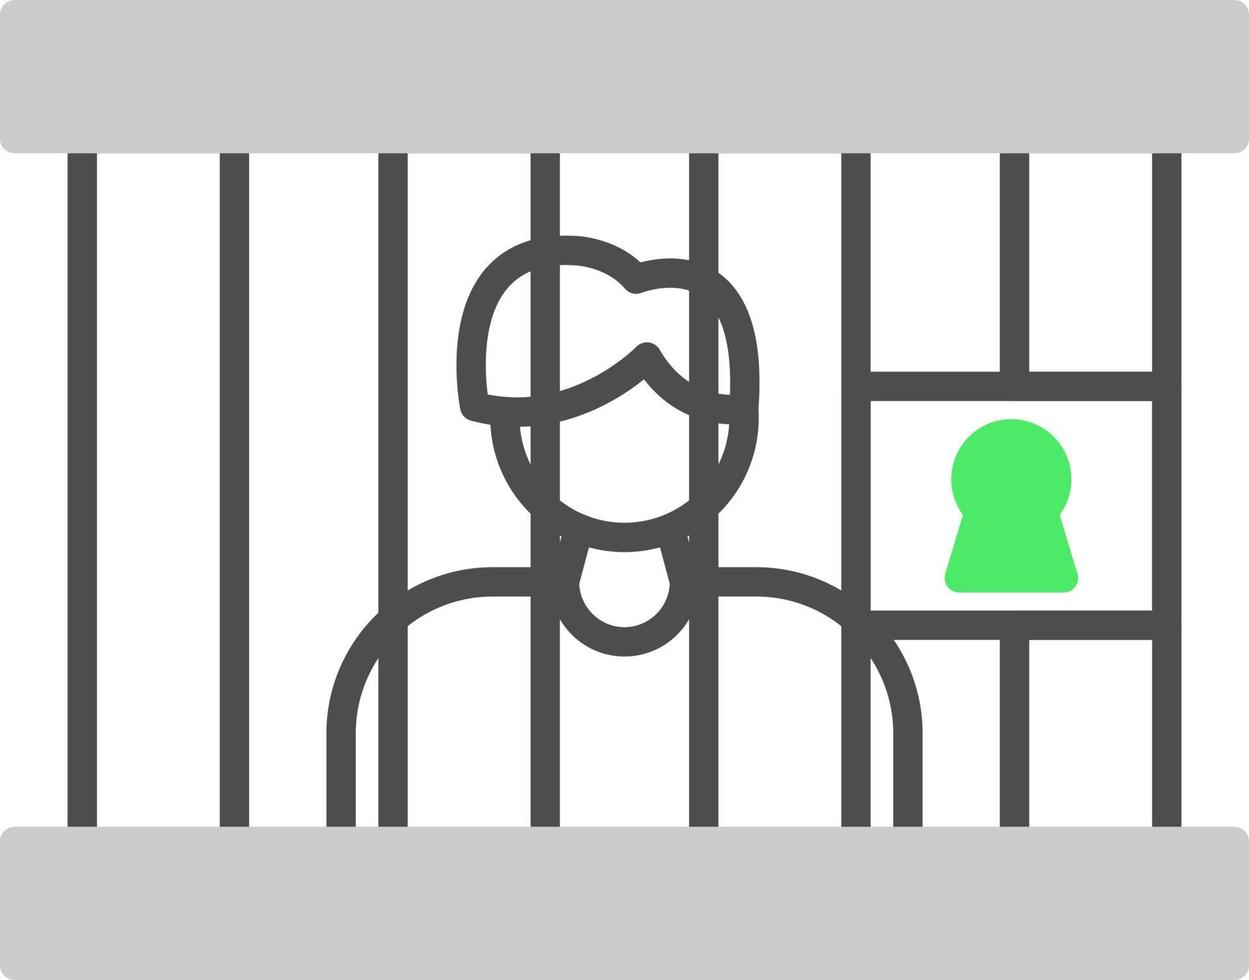 Gefängnis kreatives Icon-Design vektor